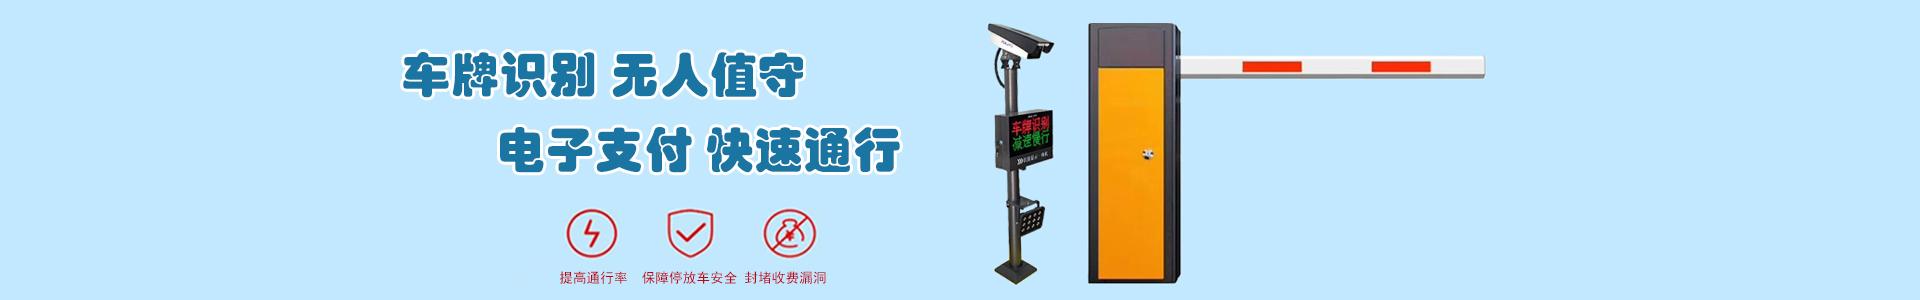 高东机场-成功案例-上海帆蓝智能科技有限公司-车辆车牌识别|监控摄像头|道闸|小区门禁|人脸识别|伸缩门|